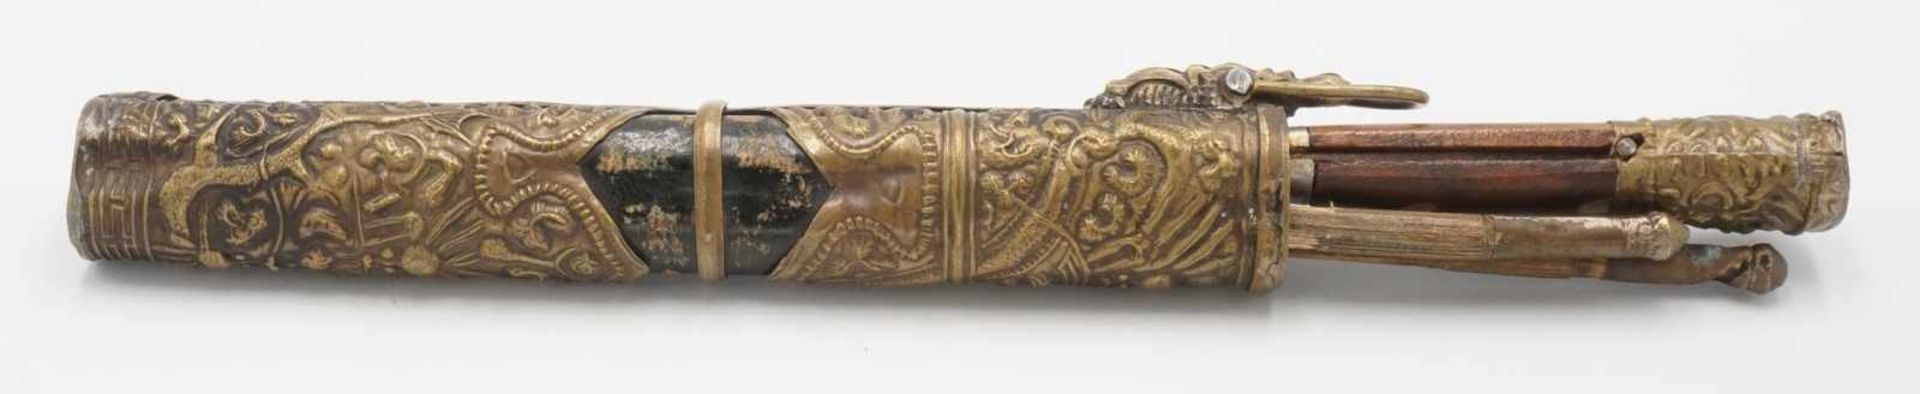 Essbesteck, Tibet, 1. Hälfte 20. Jh.Messer und zwei Stäbchen im metallbeschlagenem Etui, altersgemäß - Bild 3 aus 3